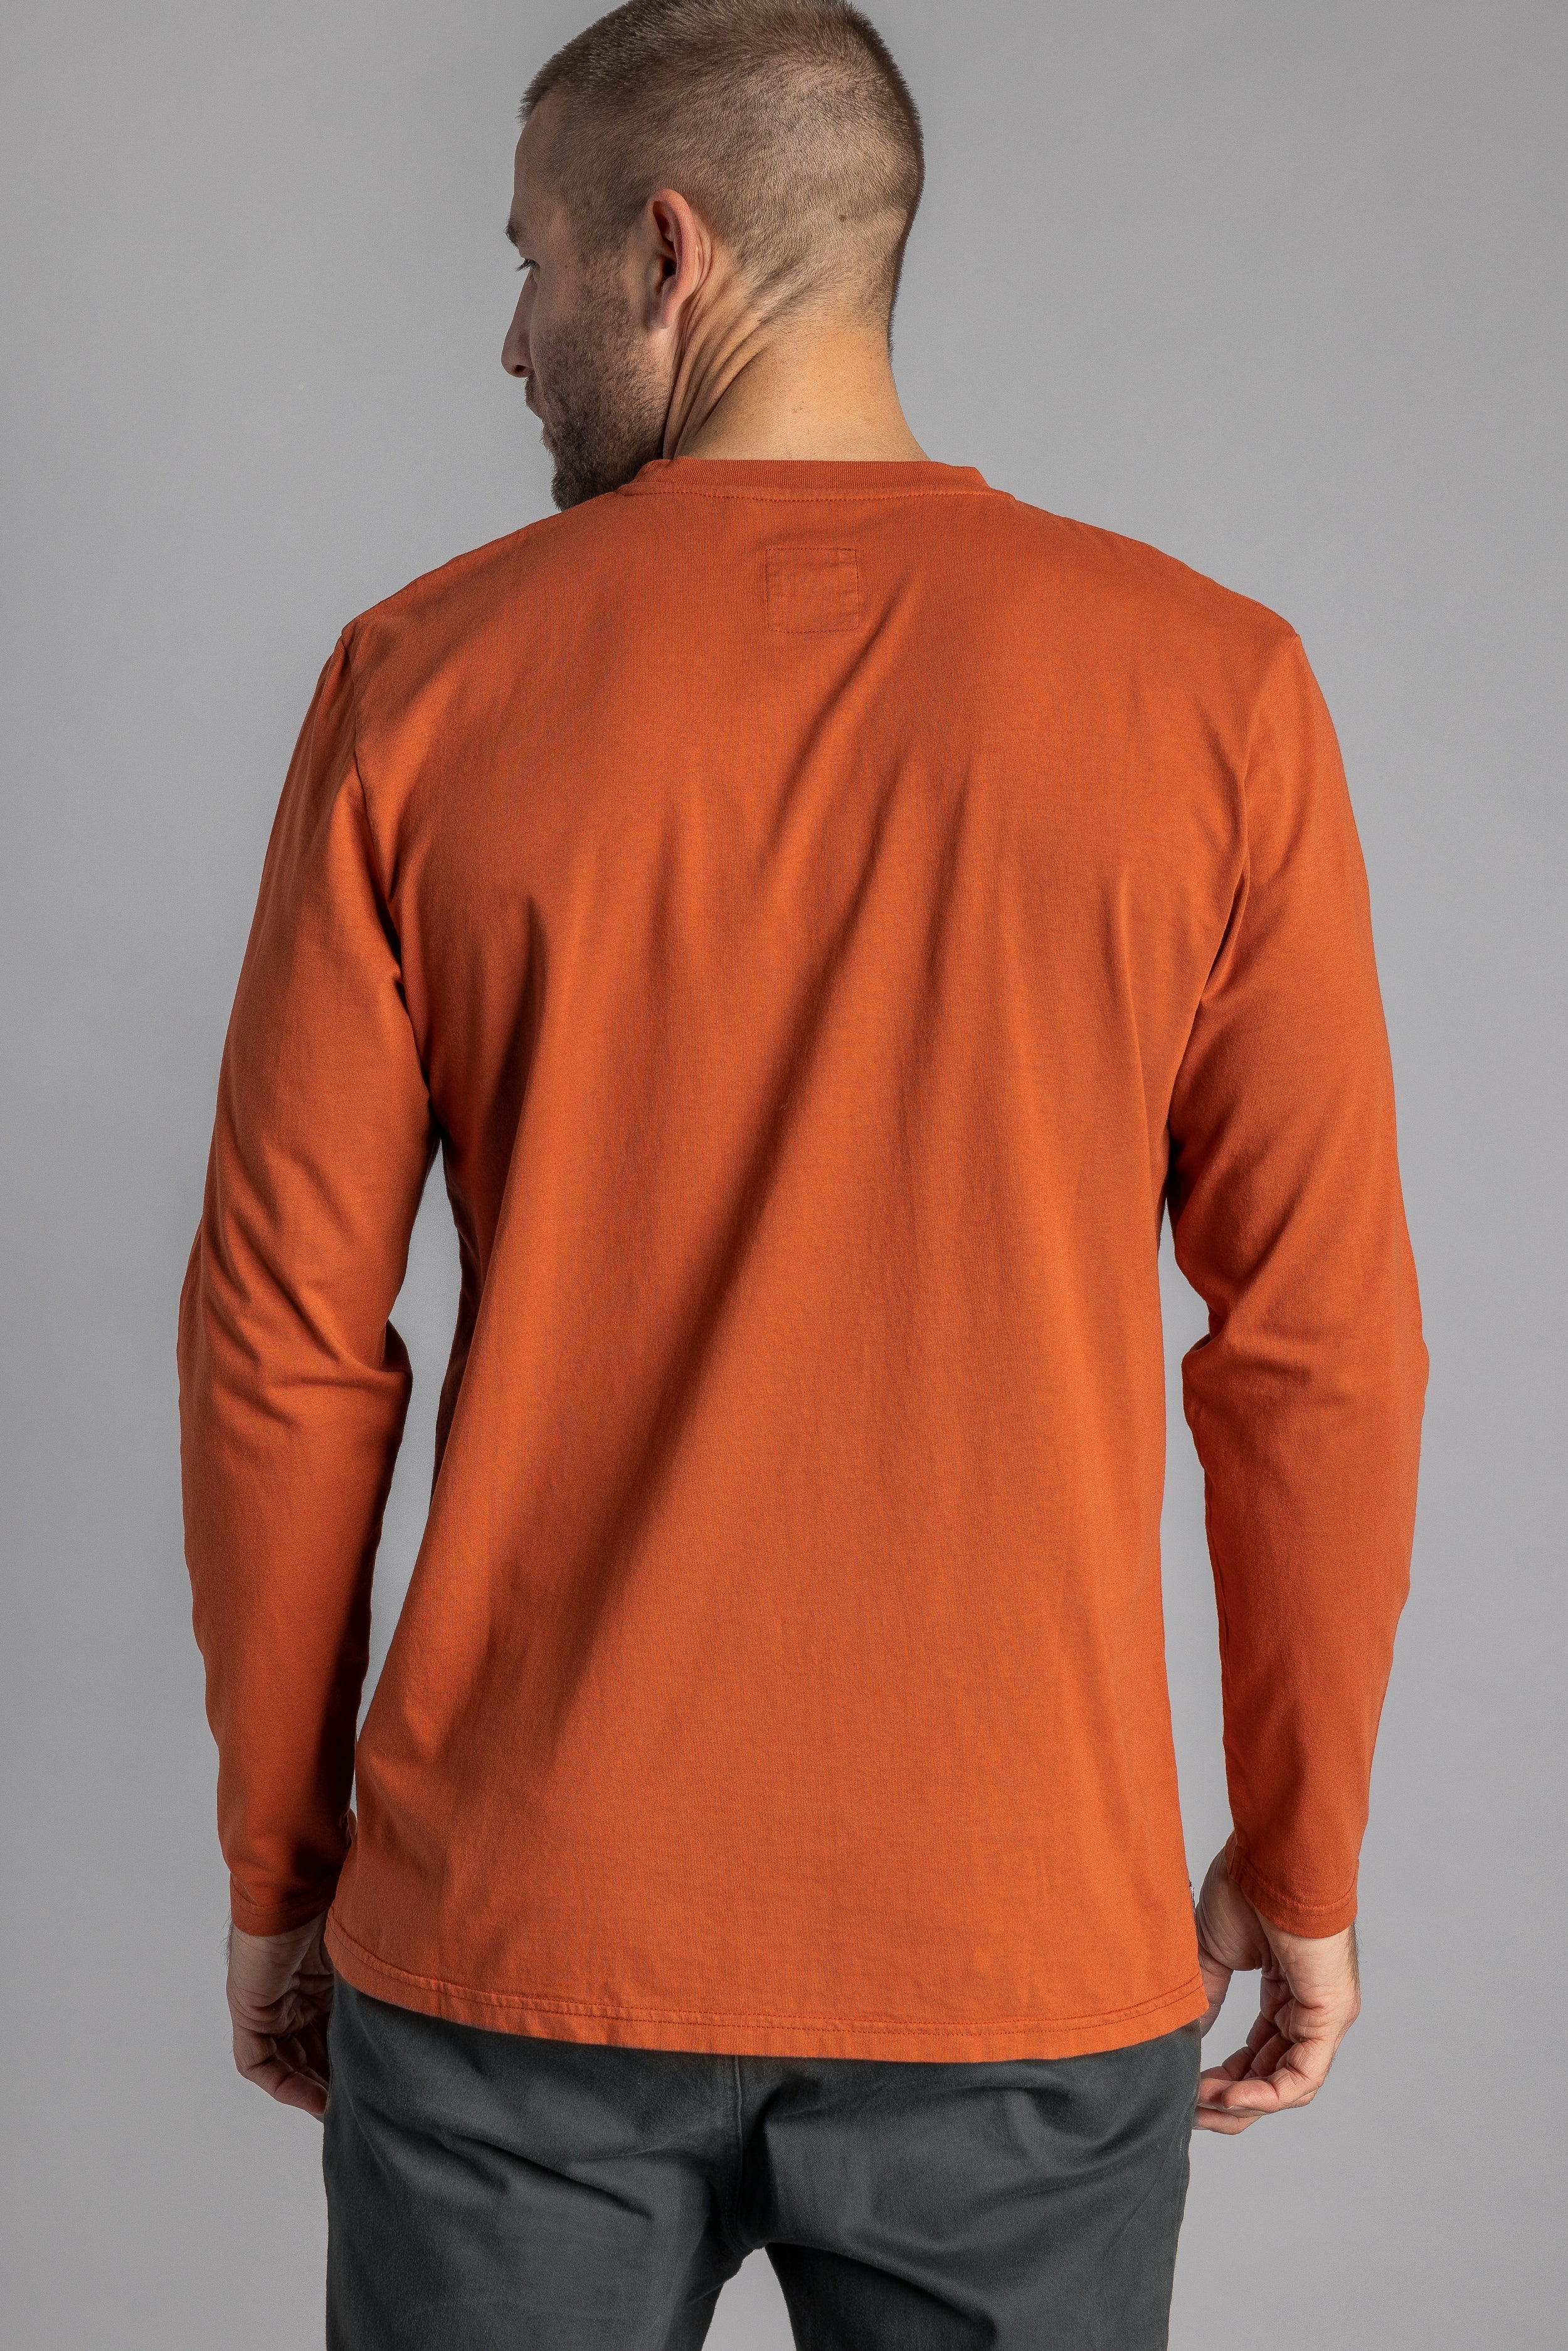 T-shirt orange à manches longues en coton recyclé de DIRTS